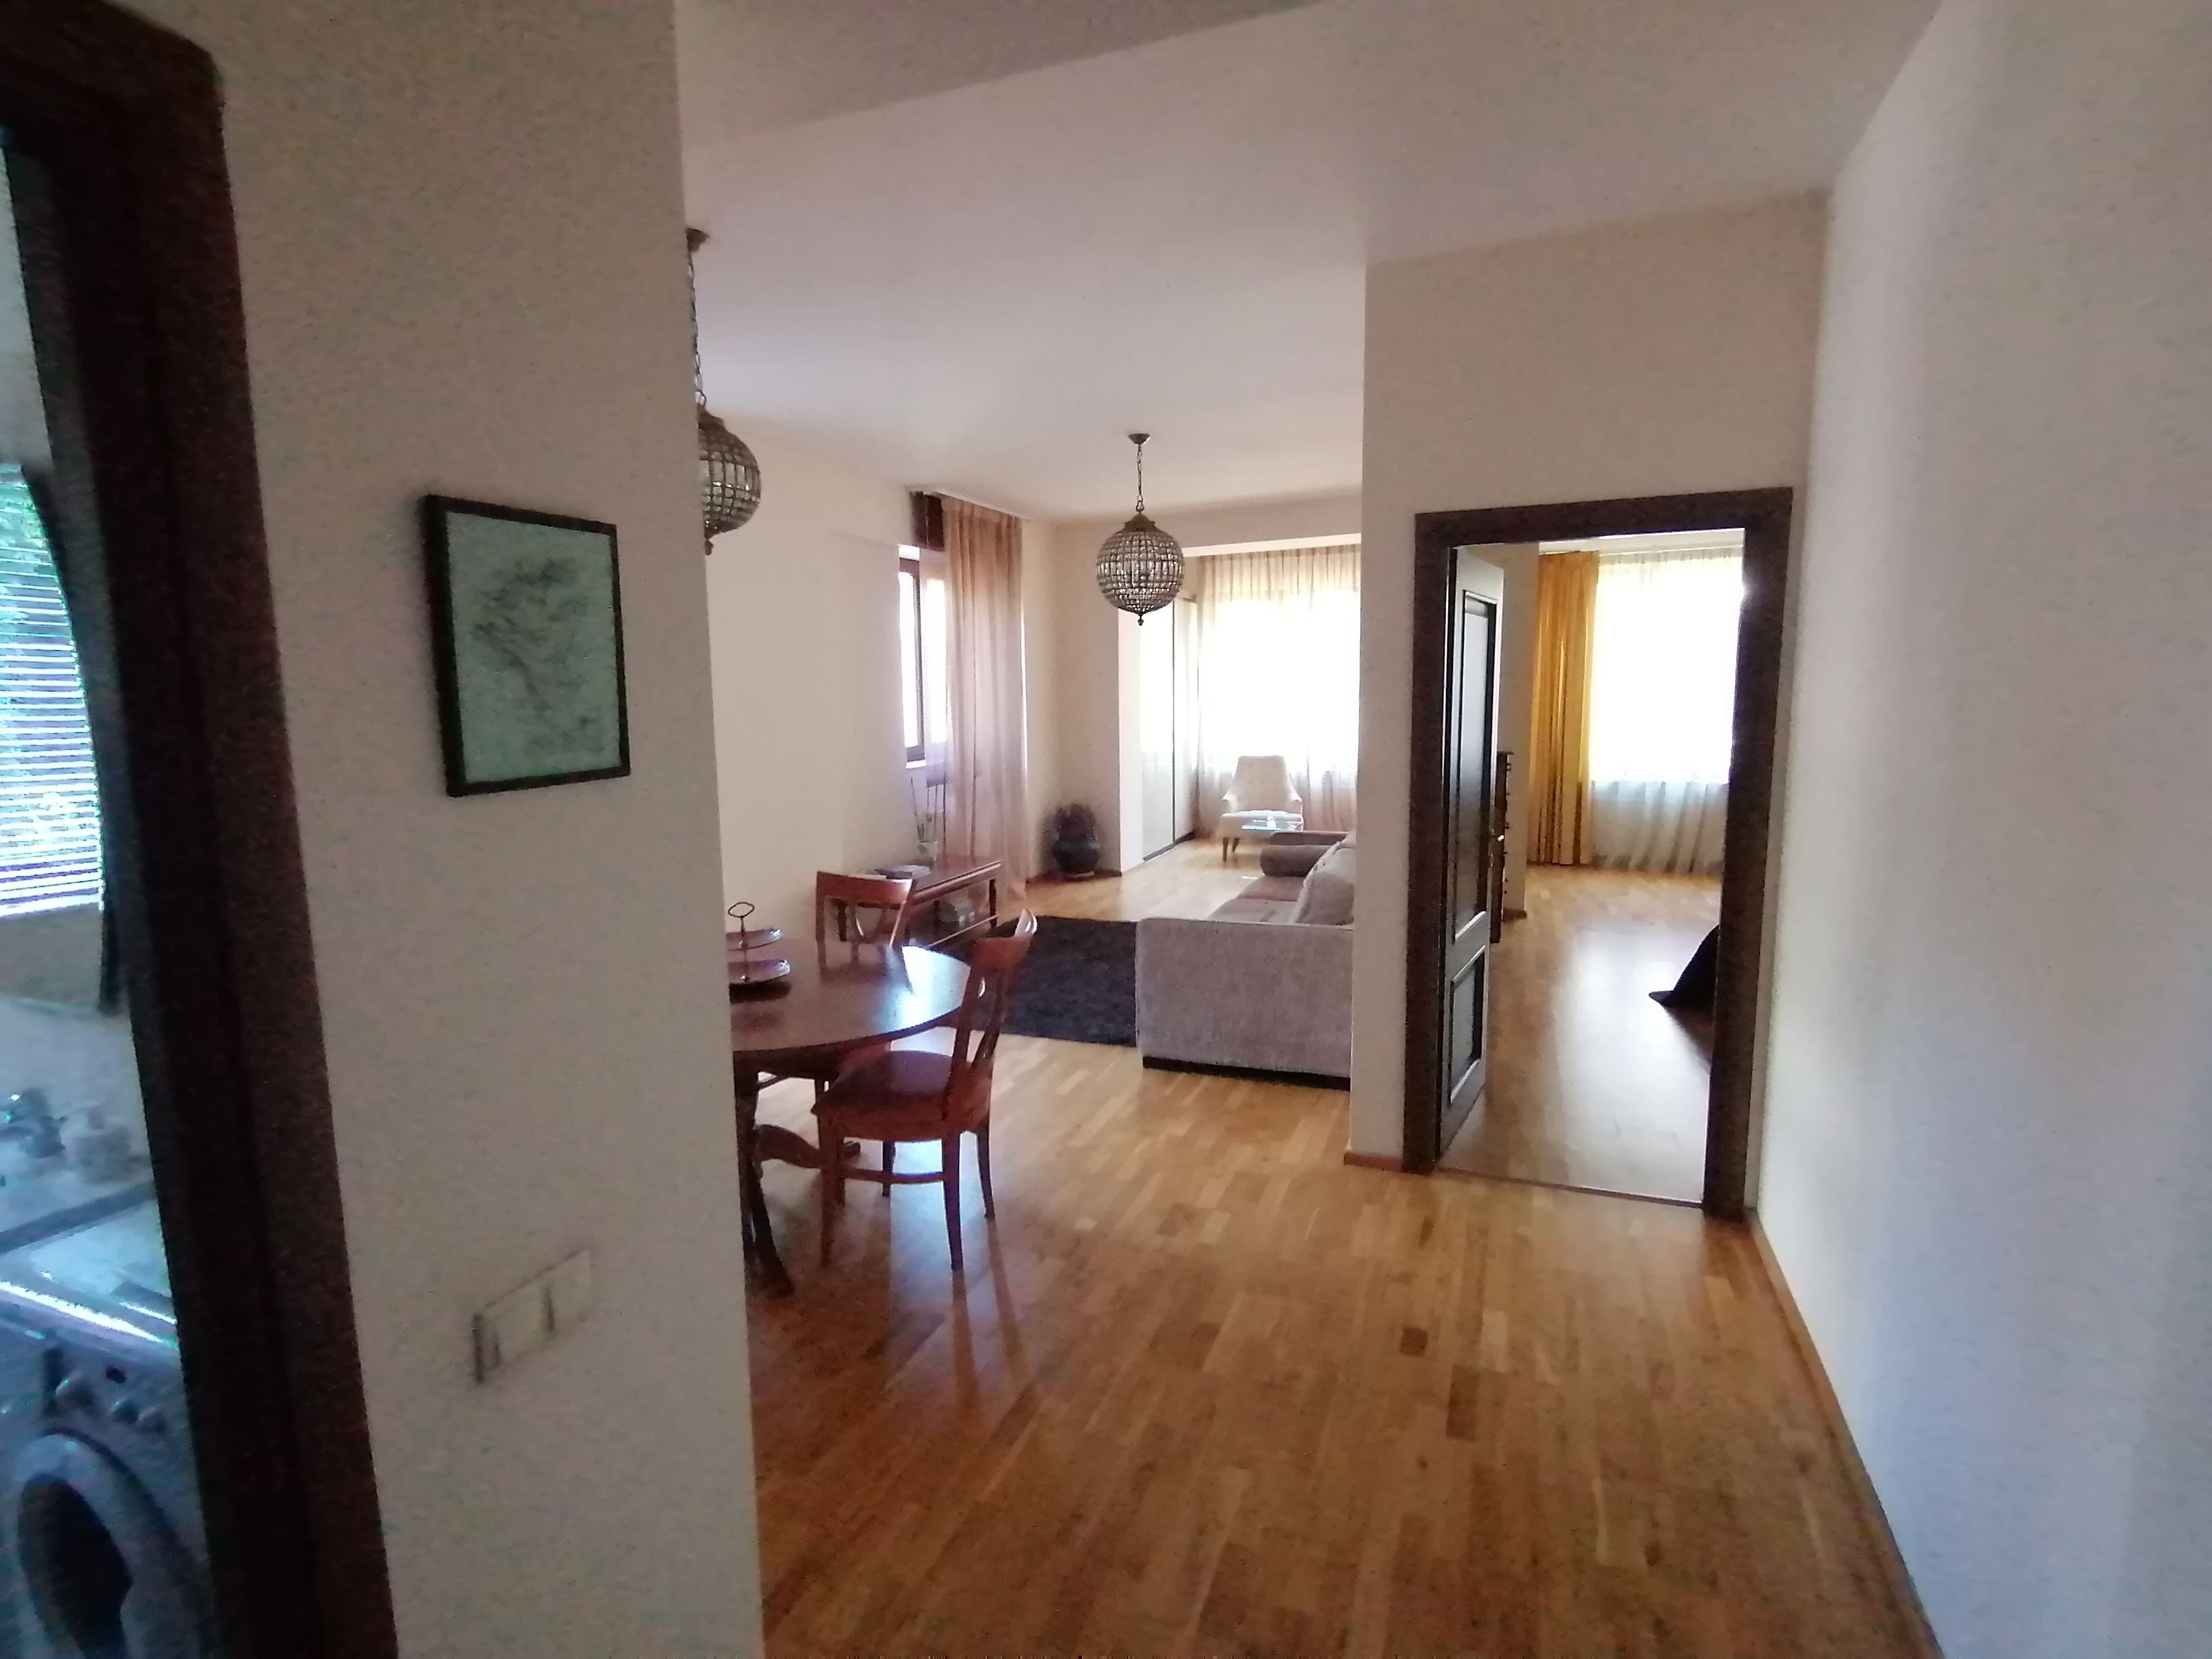 Apartament exclusivist 94,55 mp in zona Floreasca